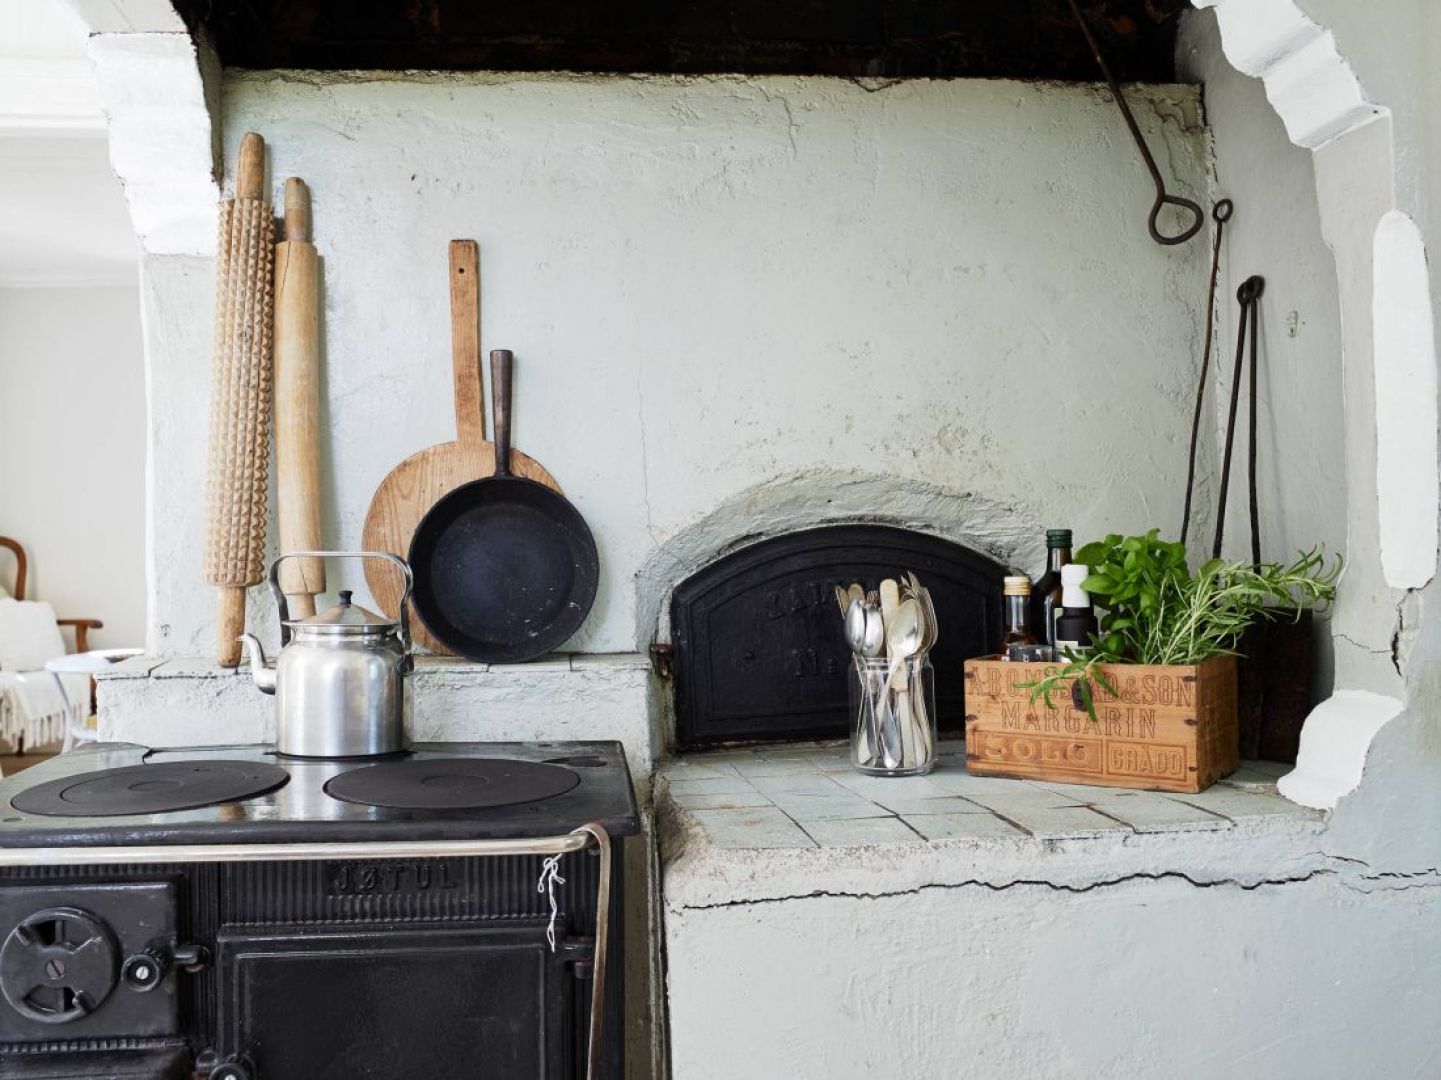 W kuchni znajduje się tradycyjny piec na drewno, pochodzący z 1914 roku. Dzięki jego obecności, wnętrze nabiera rustykalnego charakteru. Fot. Stadshem.